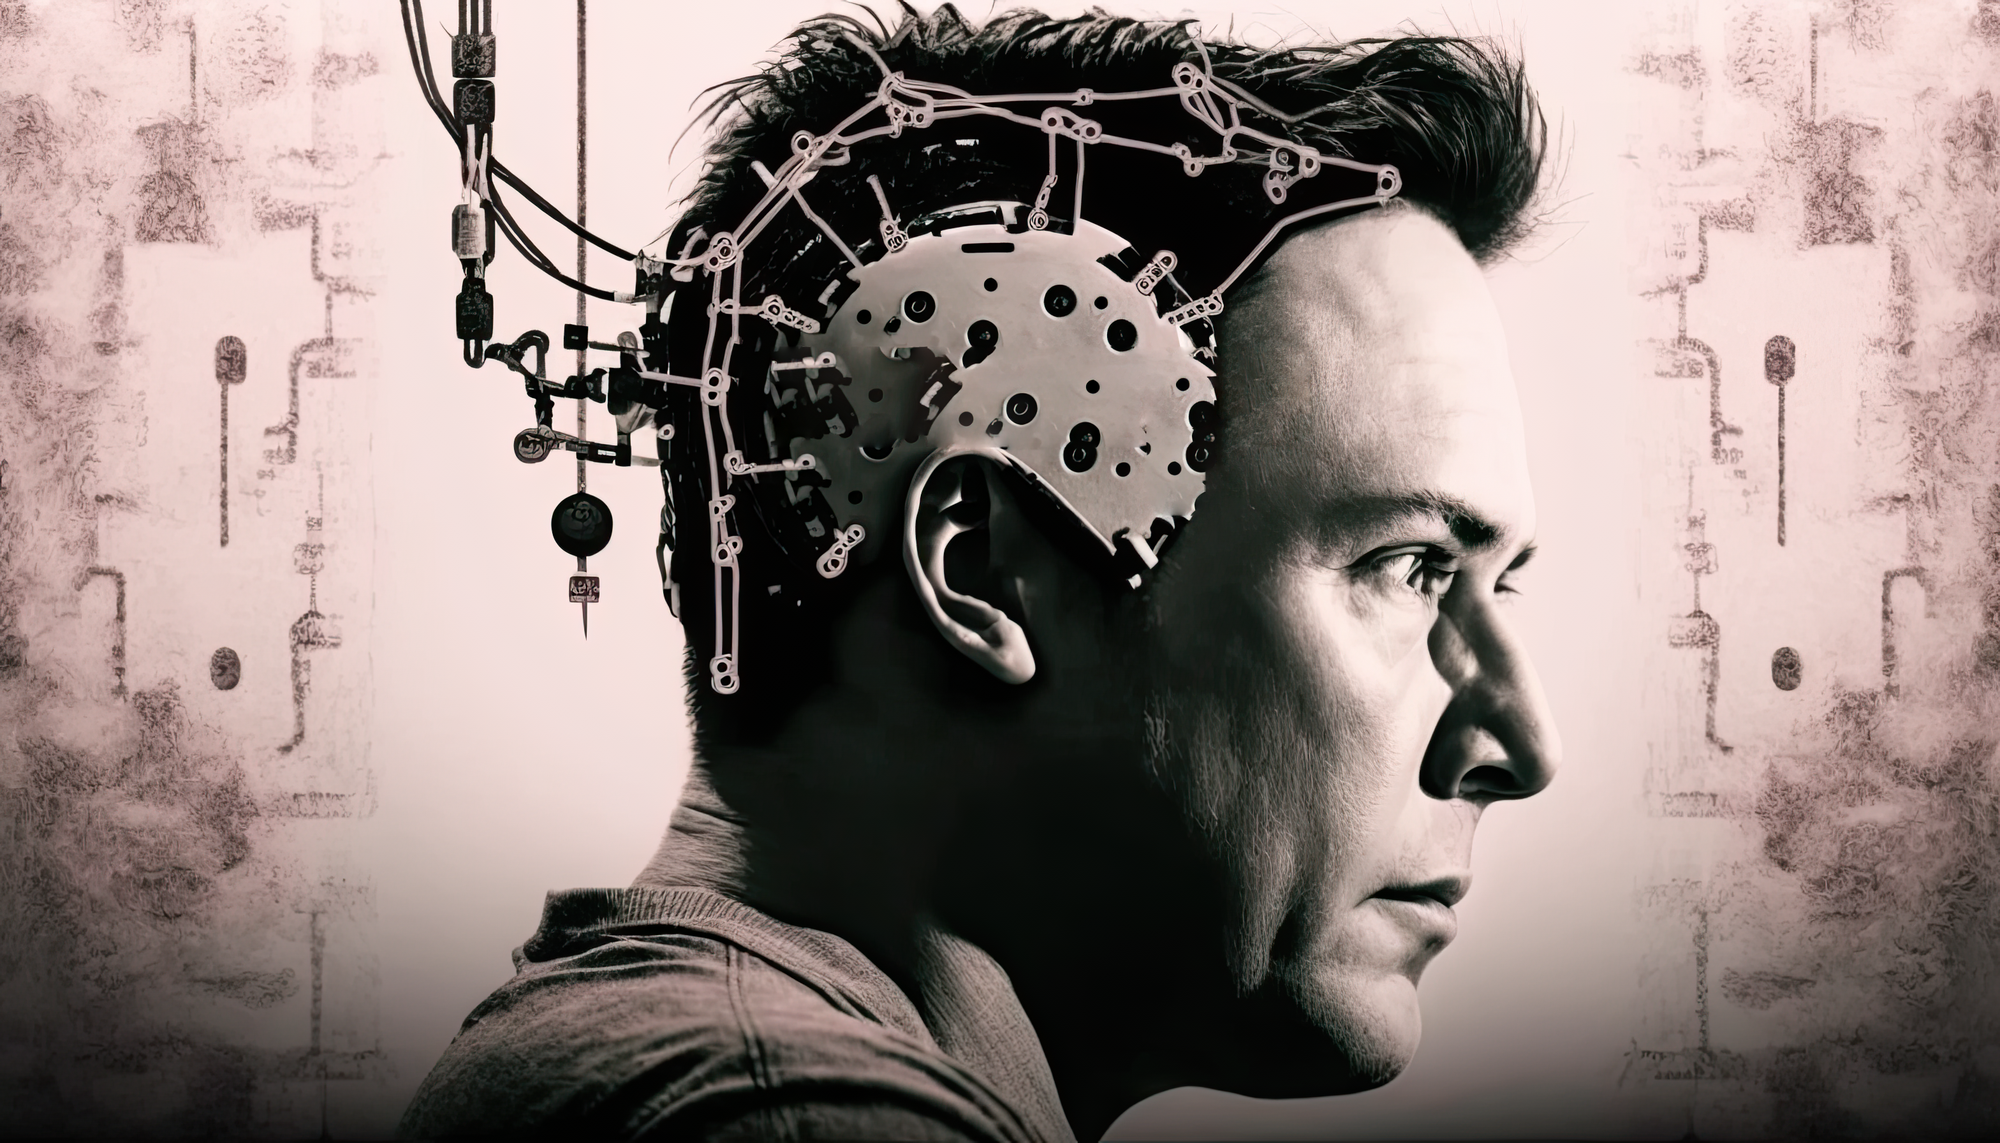  Elon Musk tuyên bố sẽ tự cấy chip não vào cơ thể mình - Ảnh 1.